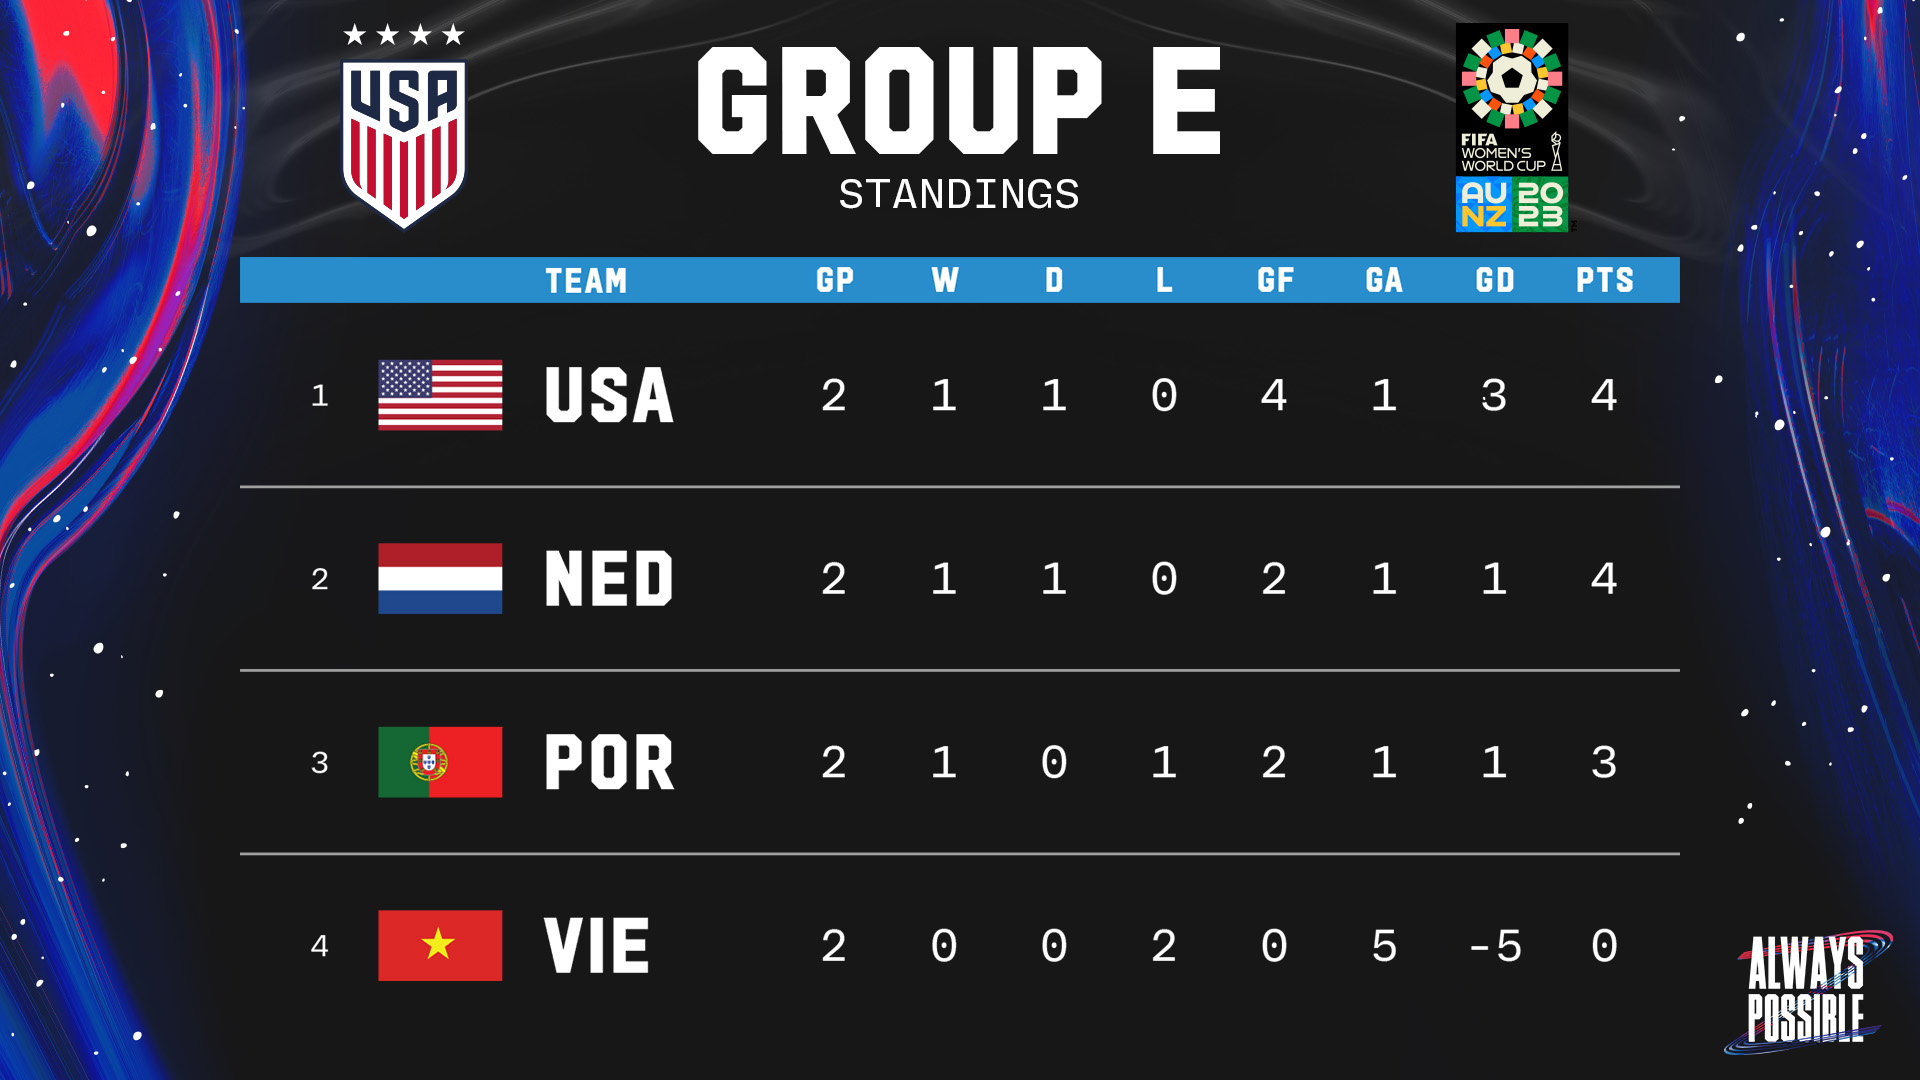 Xếp hạng tại bảng E trước lượt đấu cuối cùng chiều 1.8, tuyển nữ Mỹ đang dẫn đầu bảng. Ảnh: US Soccer